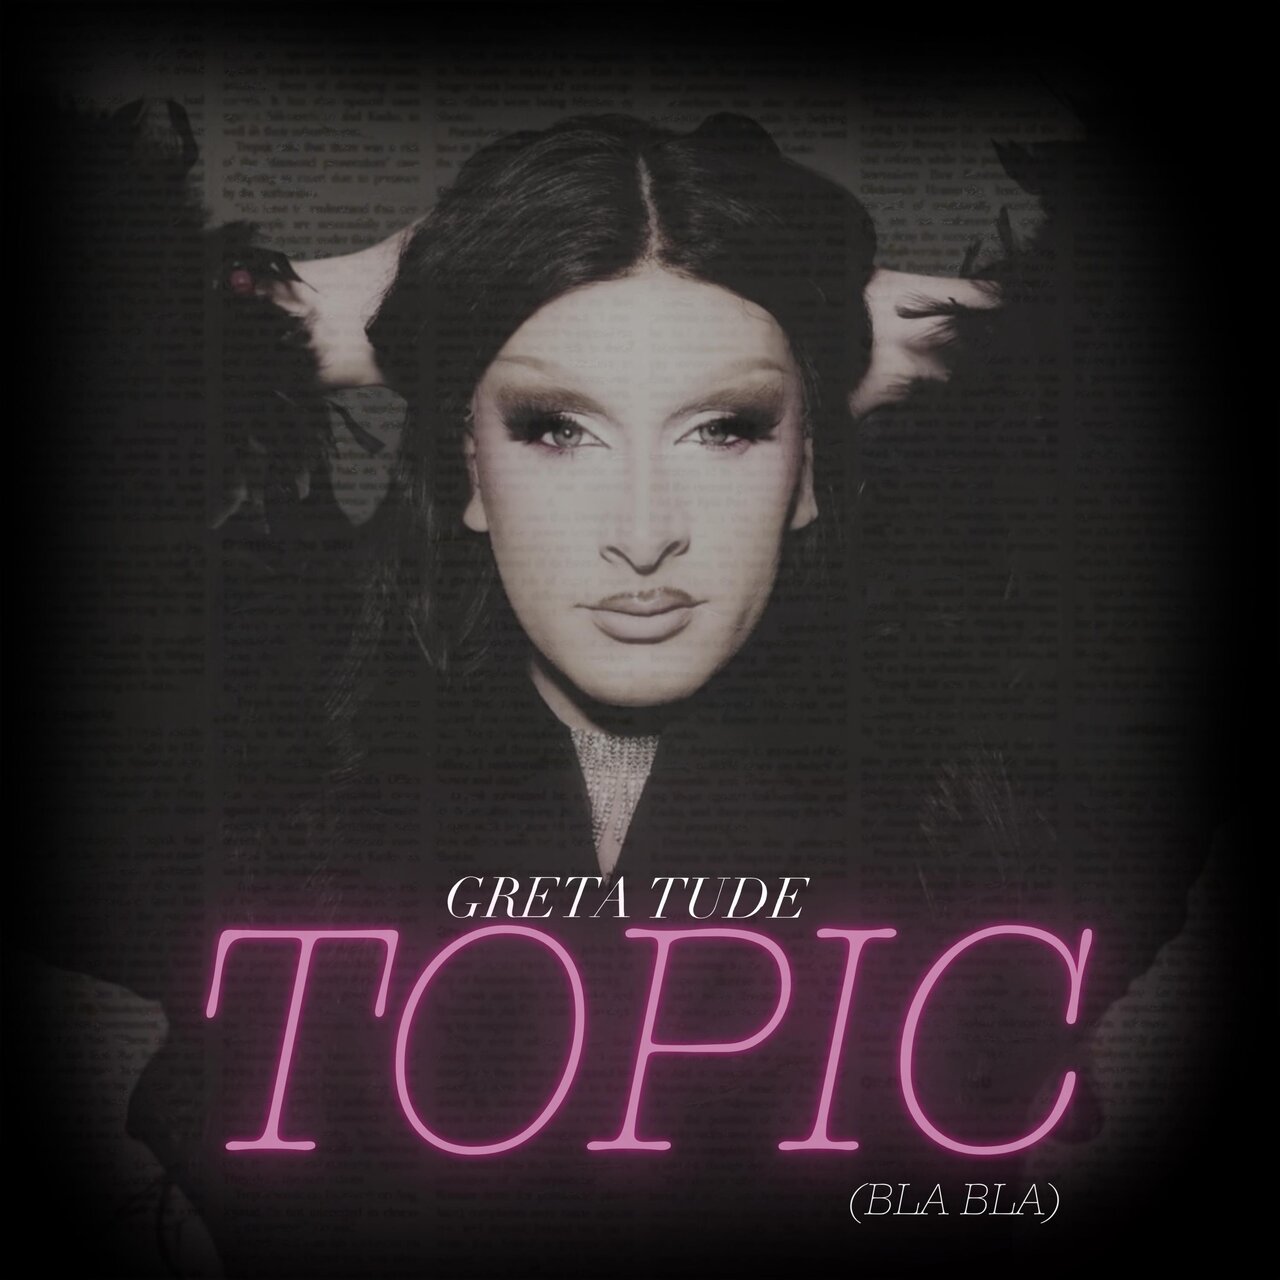 Greta Tude — TOPIC (Bla Bla) cover artwork